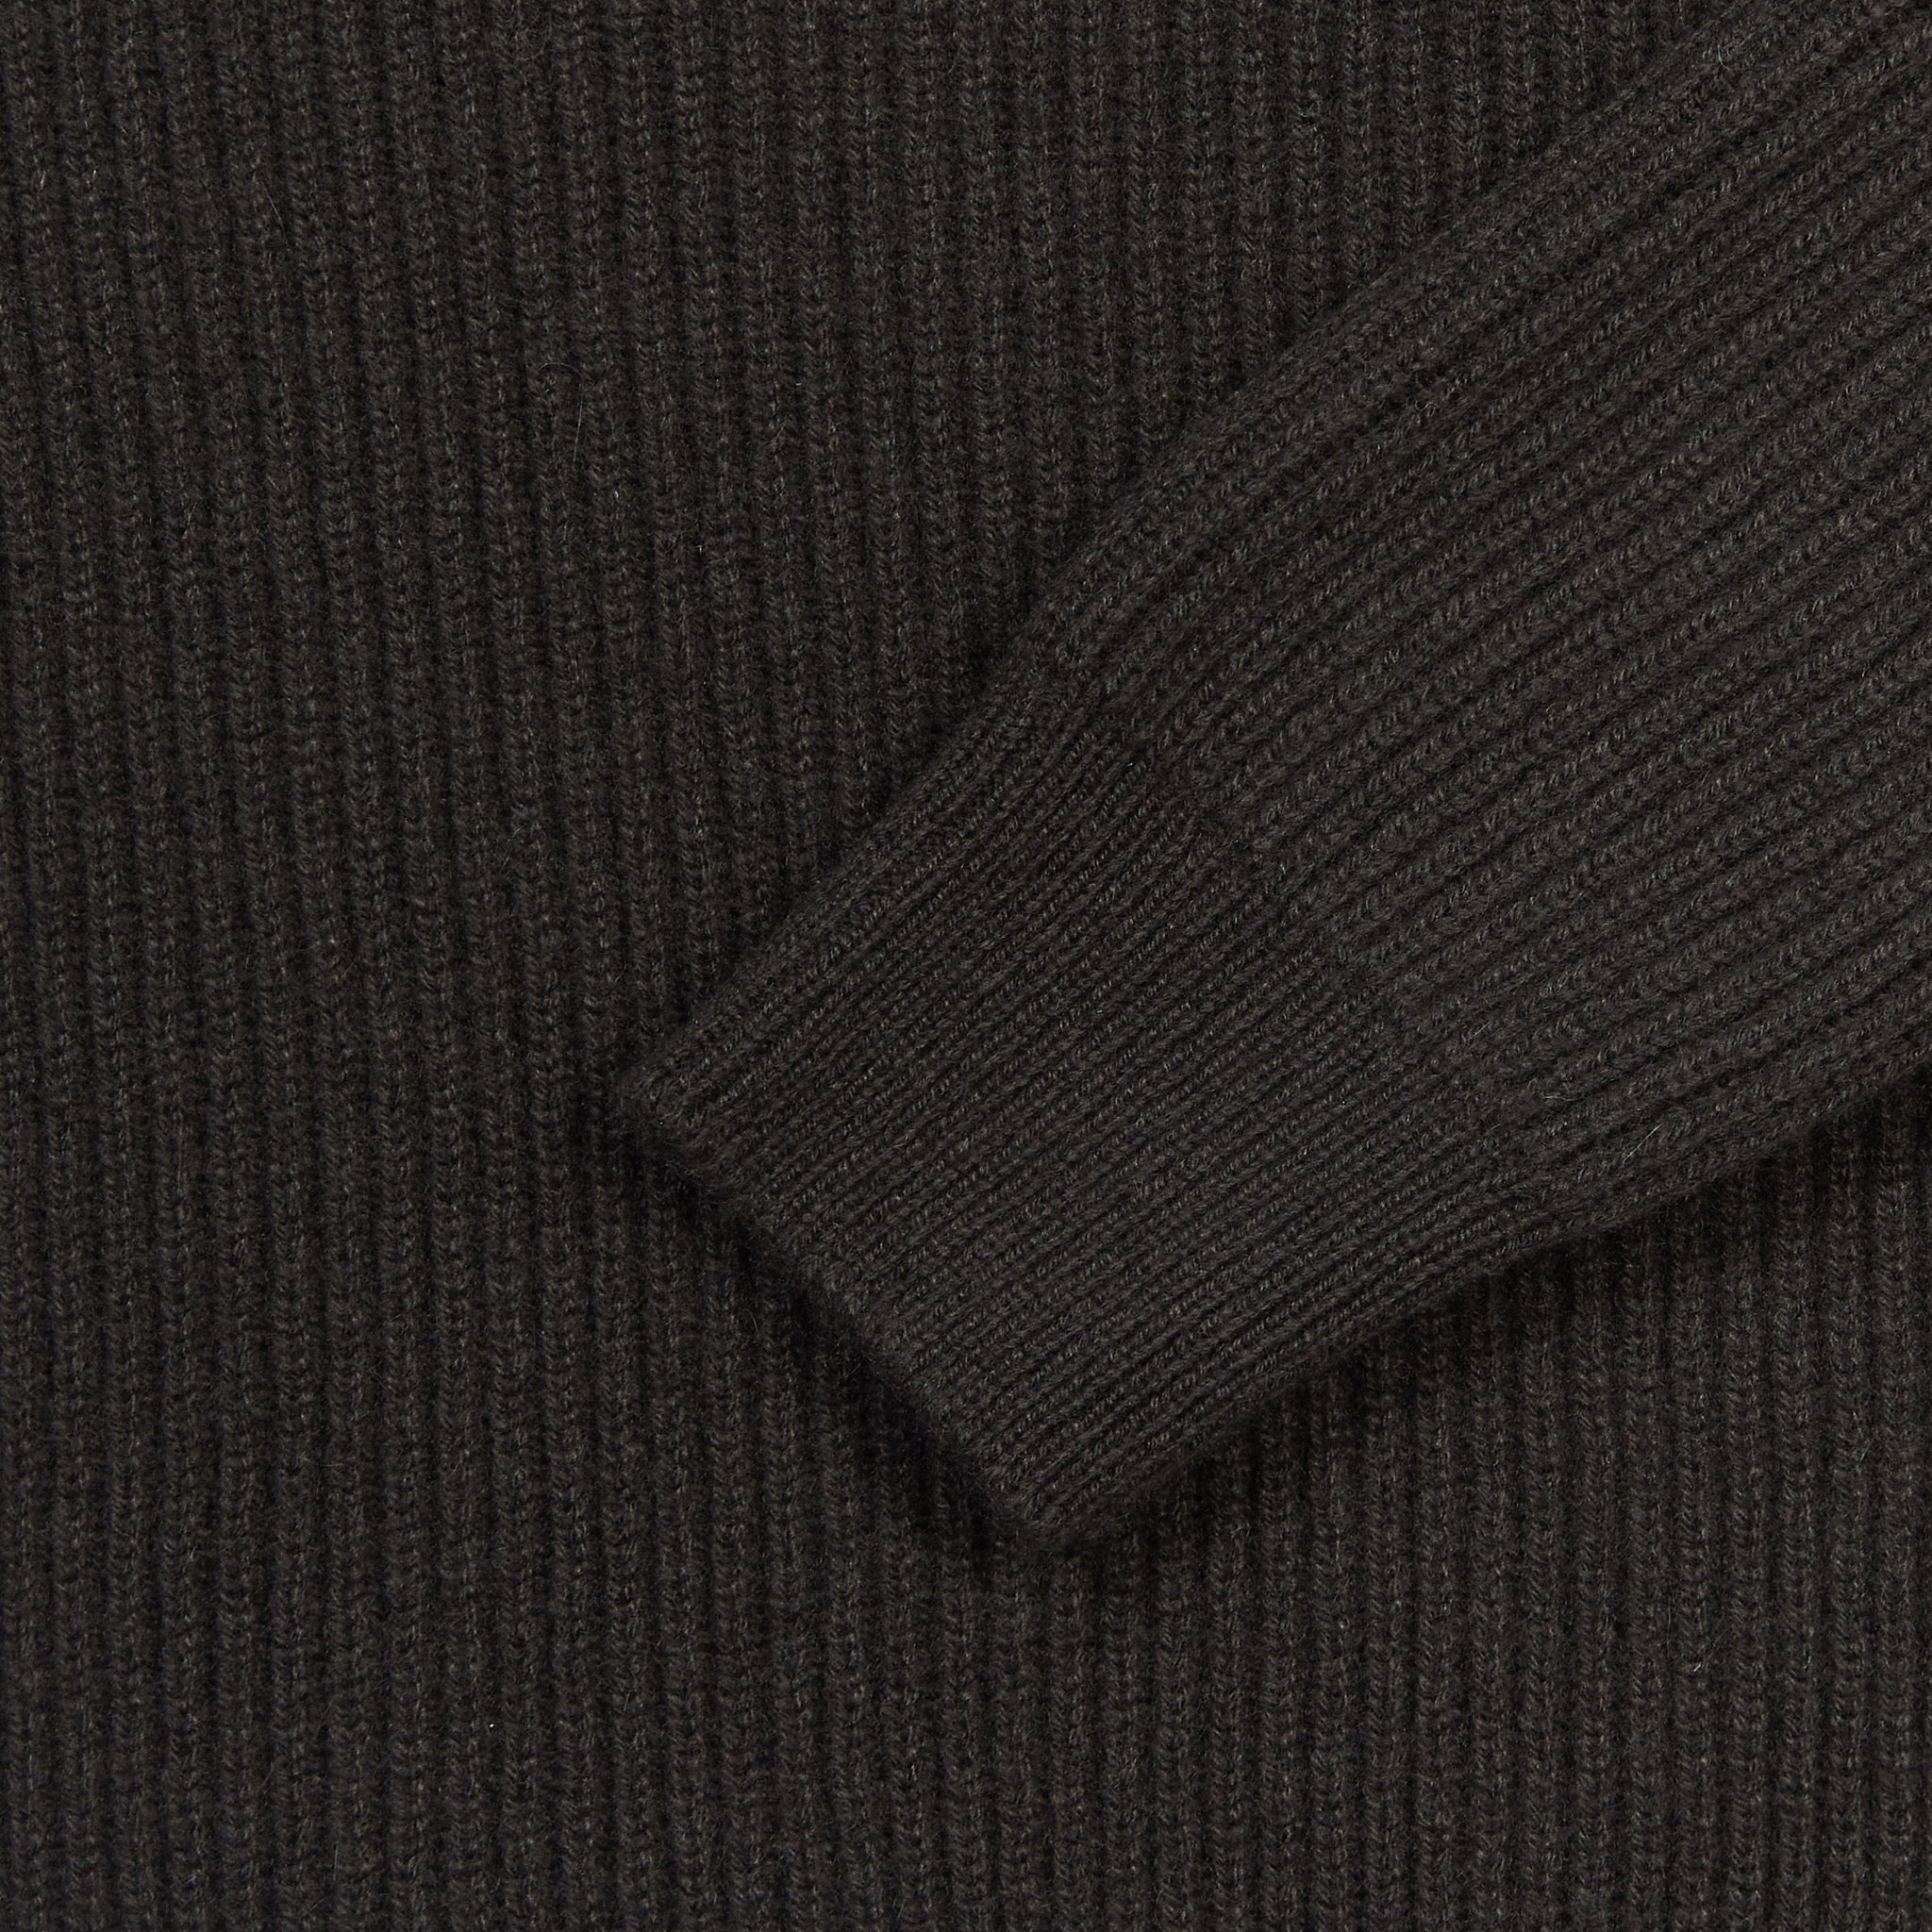 Cashmere alpine half zip sweater in dark olive